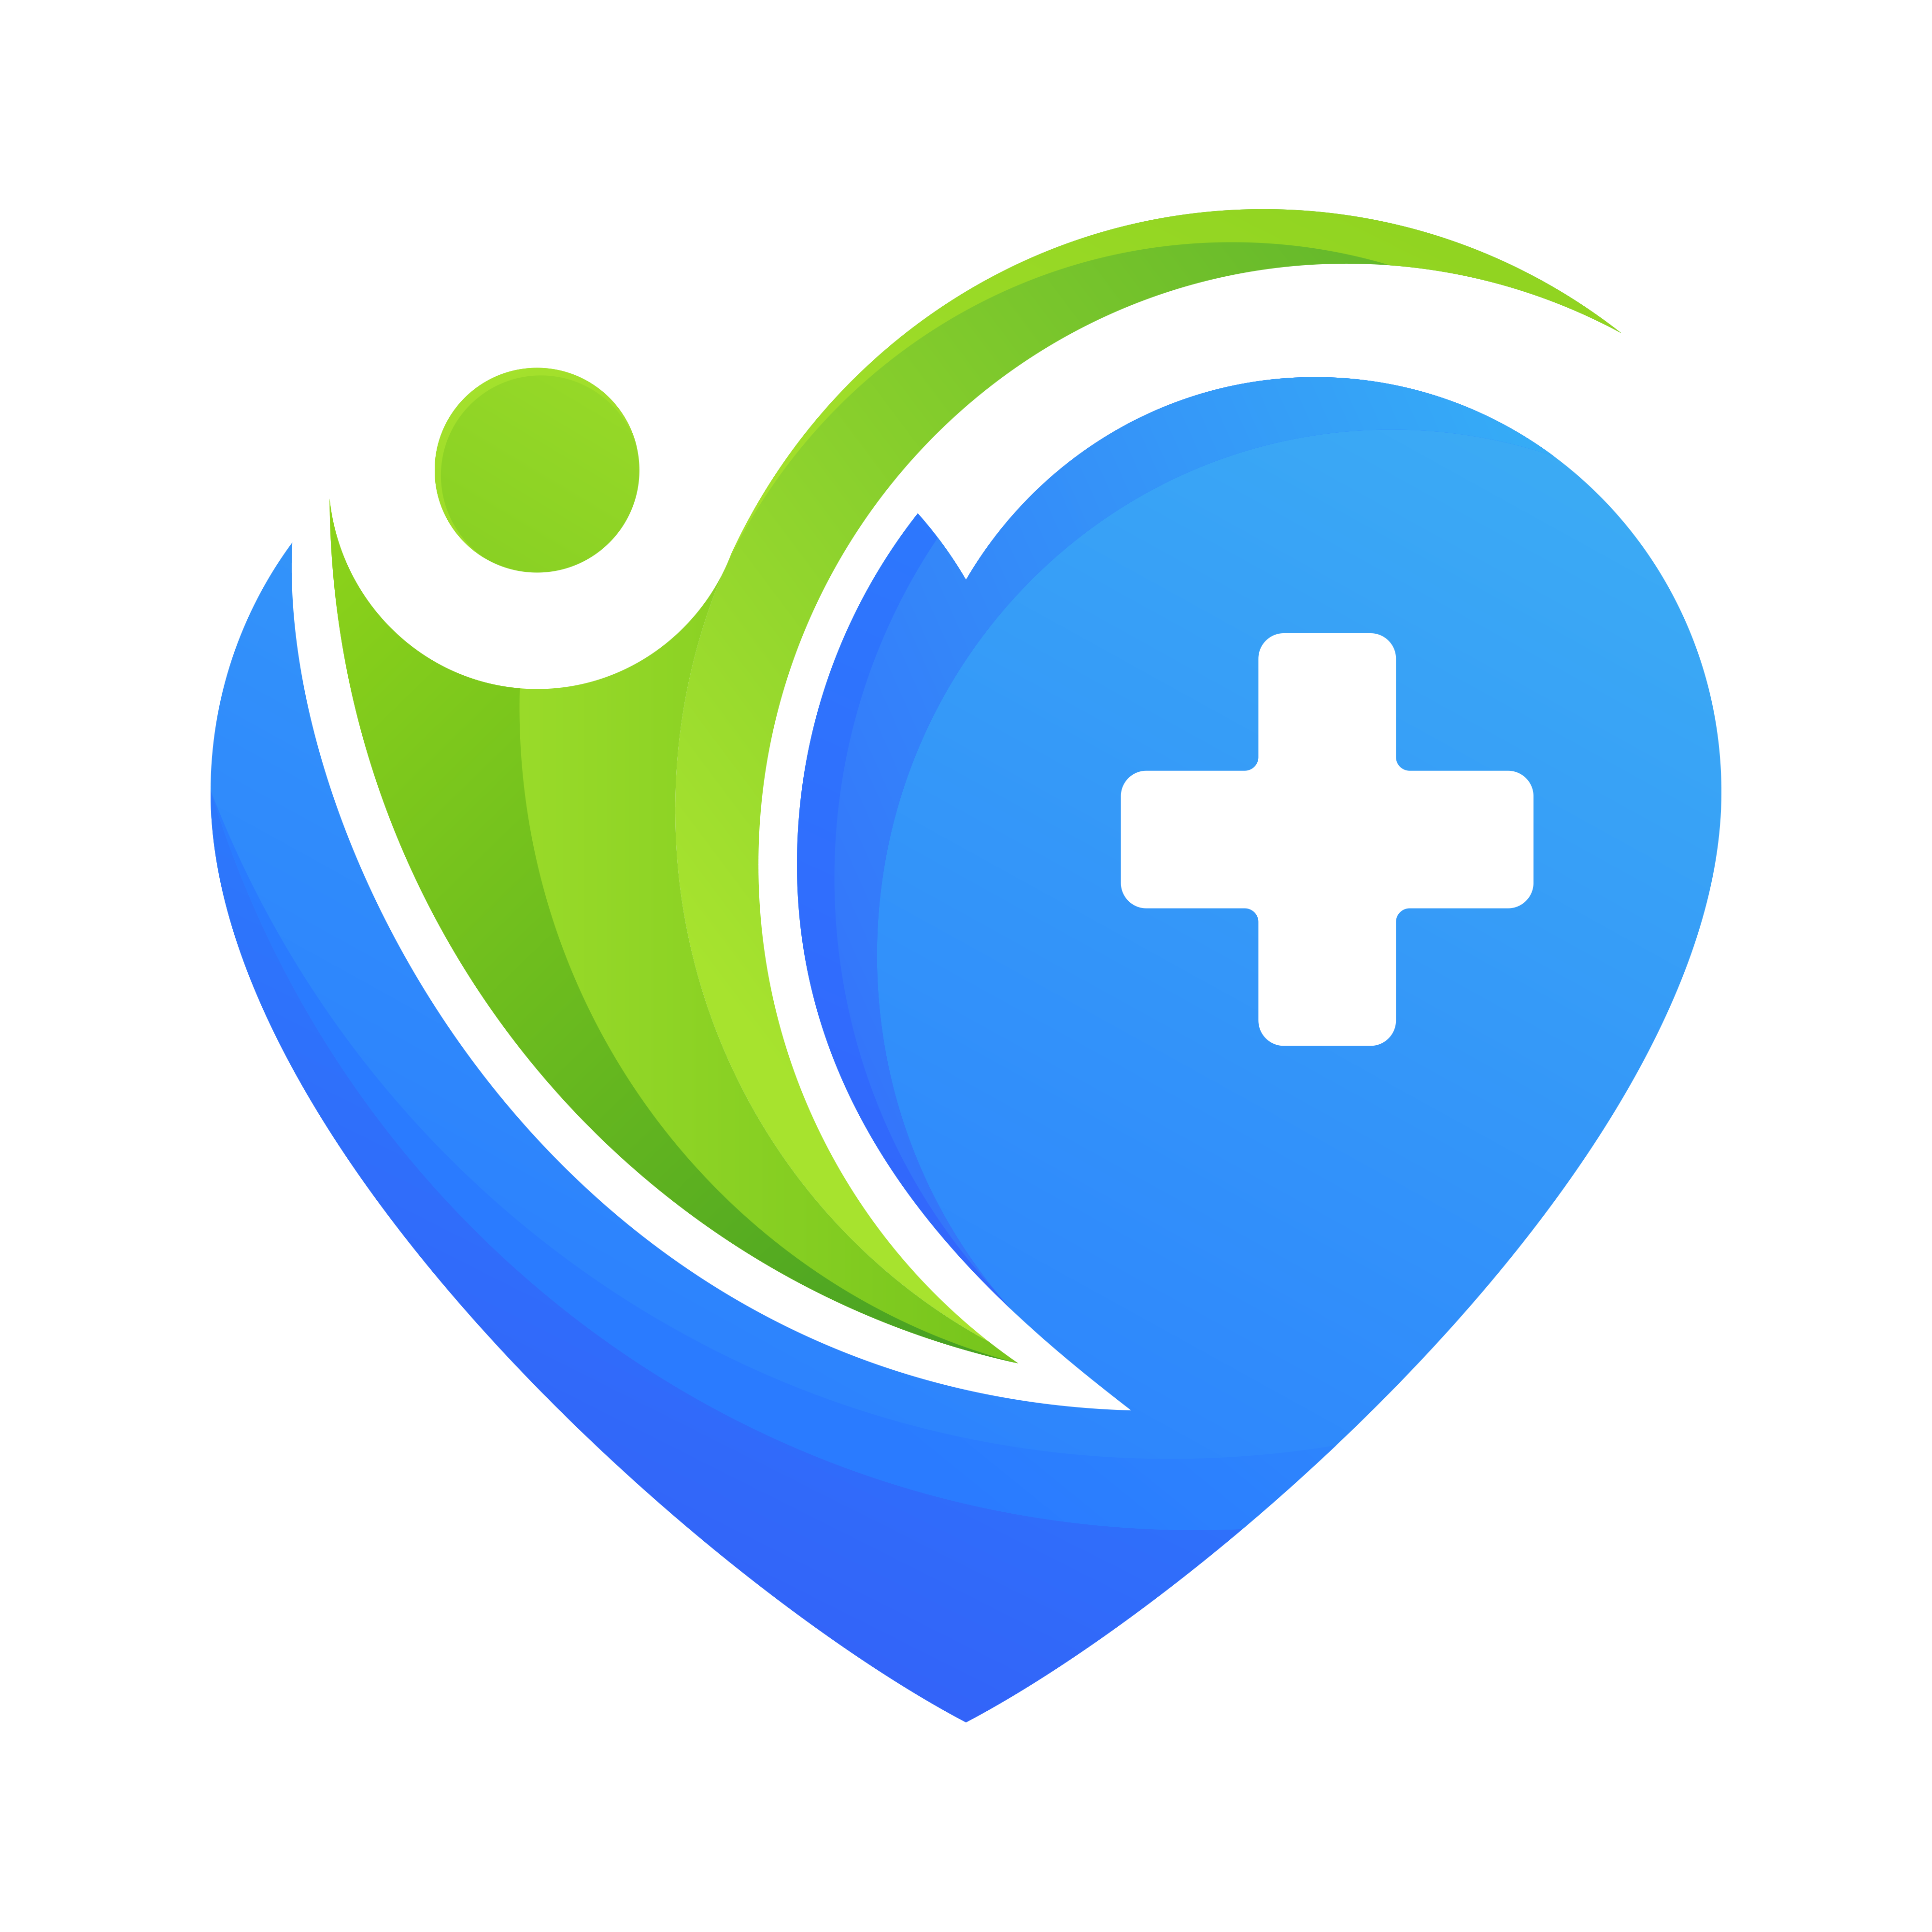 Medical-health-logo-design-on-transparent-background-PNG